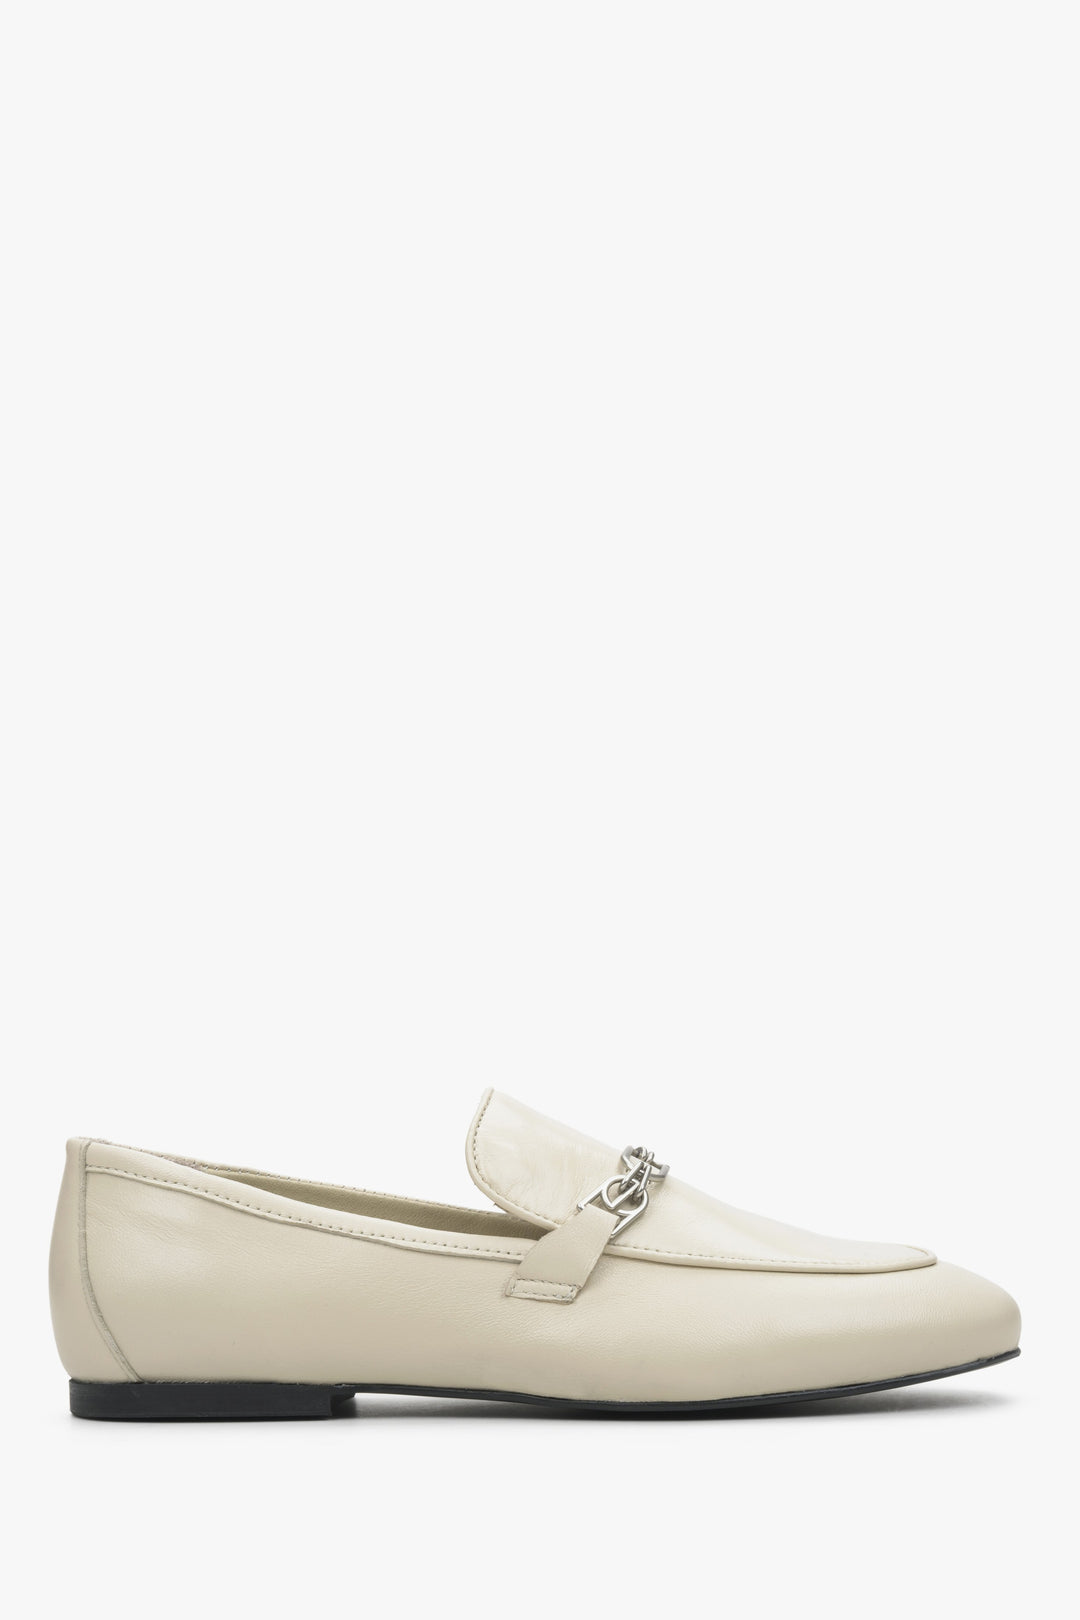 Women's light beige penny loafers Estro - shoe profile.